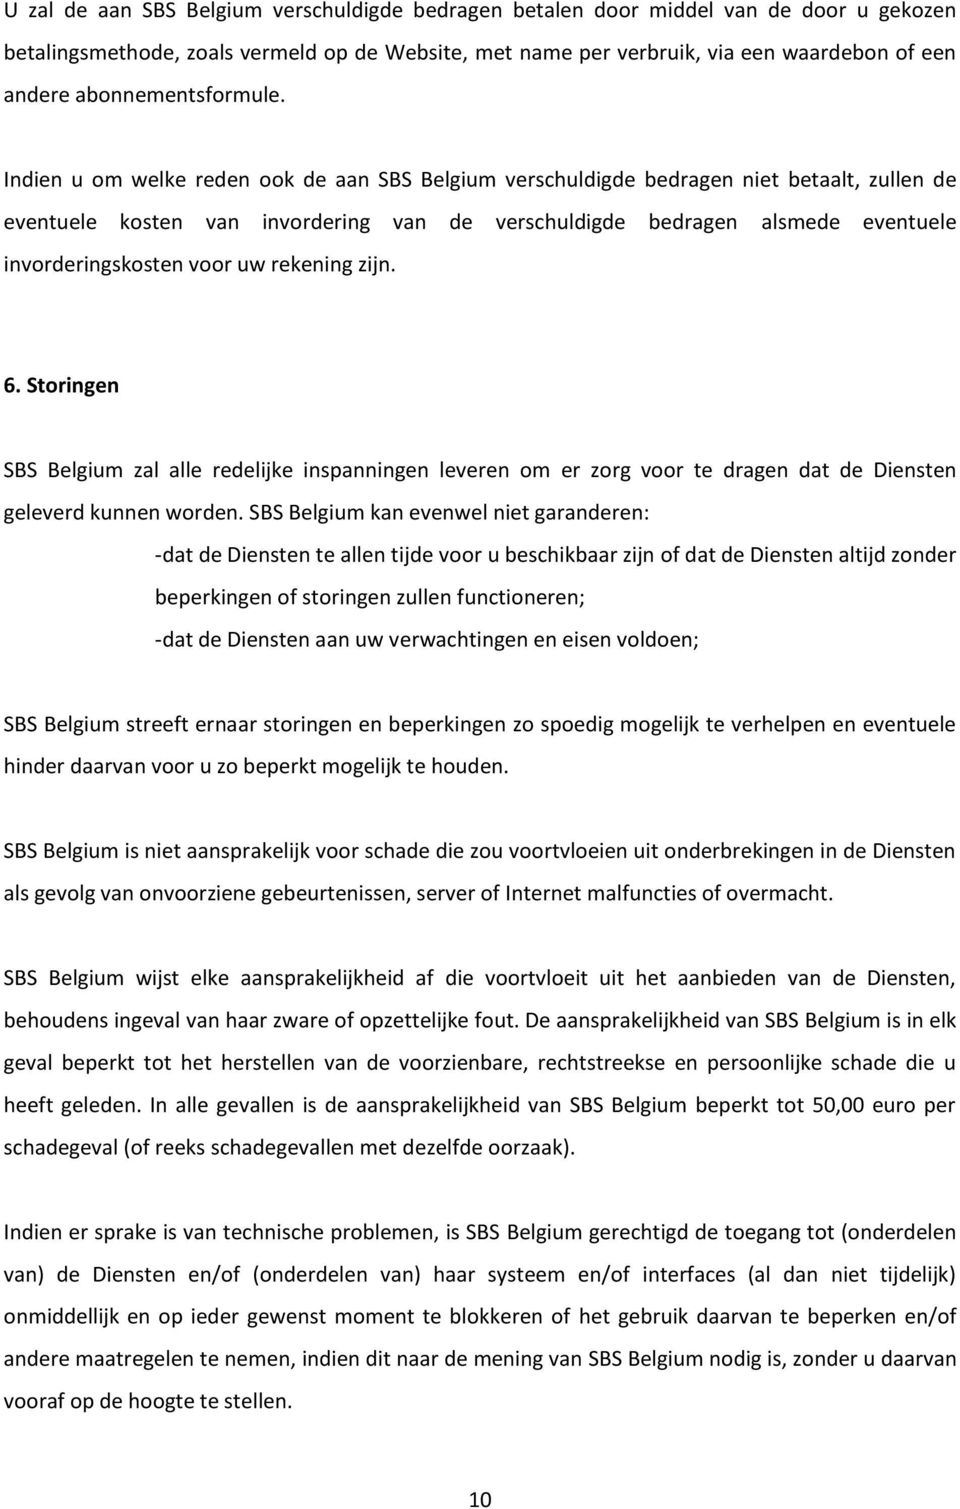 Indien u om welke reden ook de aan SBS Belgium verschuldigde bedragen niet betaalt, zullen de eventuele kosten van invordering van de verschuldigde bedragen alsmede eventuele invorderingskosten voor